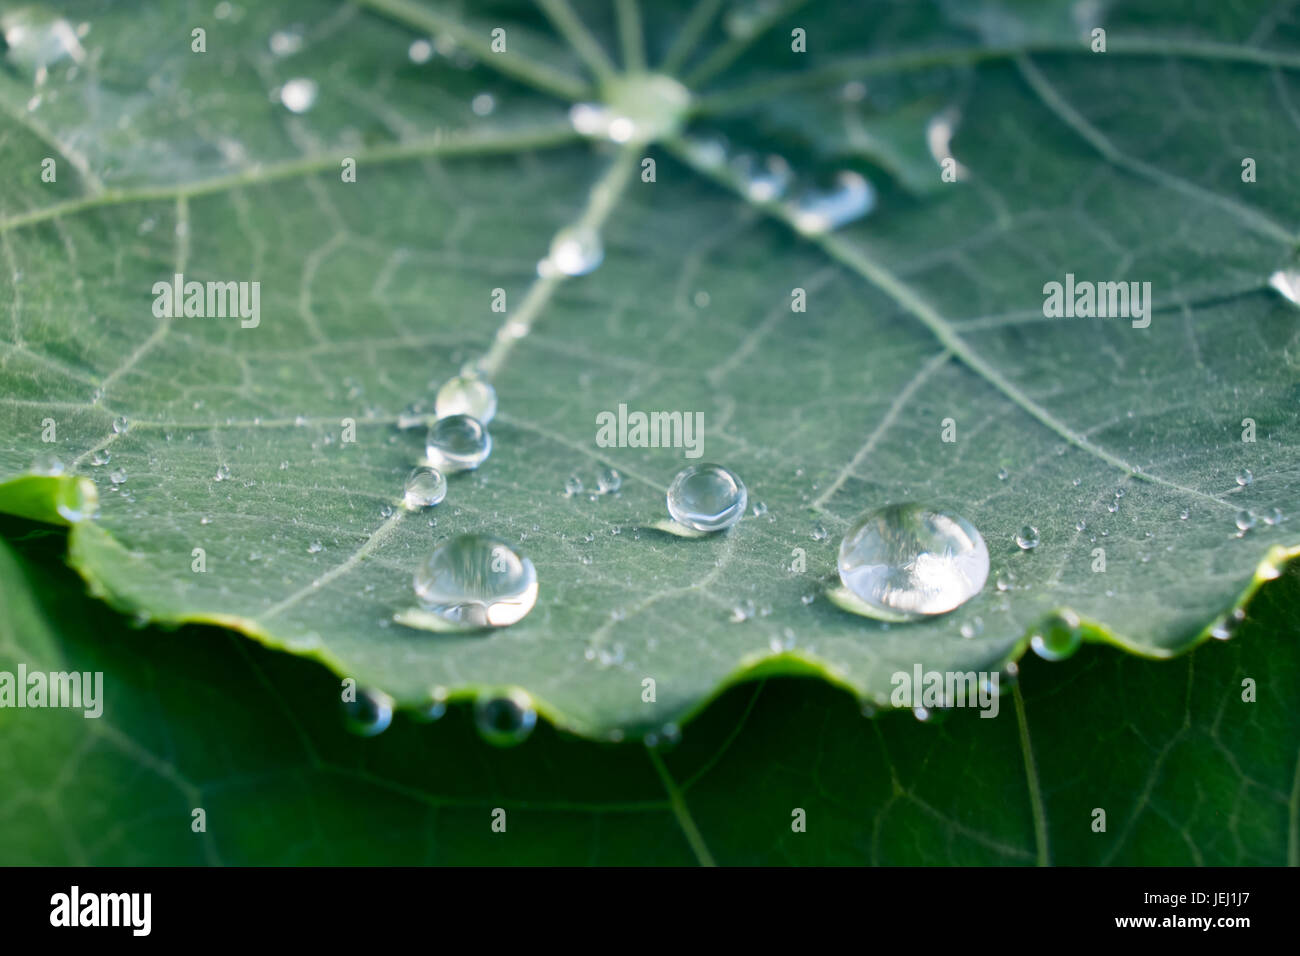 Round pioggia le goccioline di acqua sulla verde foglia nasturtium - macro close up con profondità di campo Foto Stock